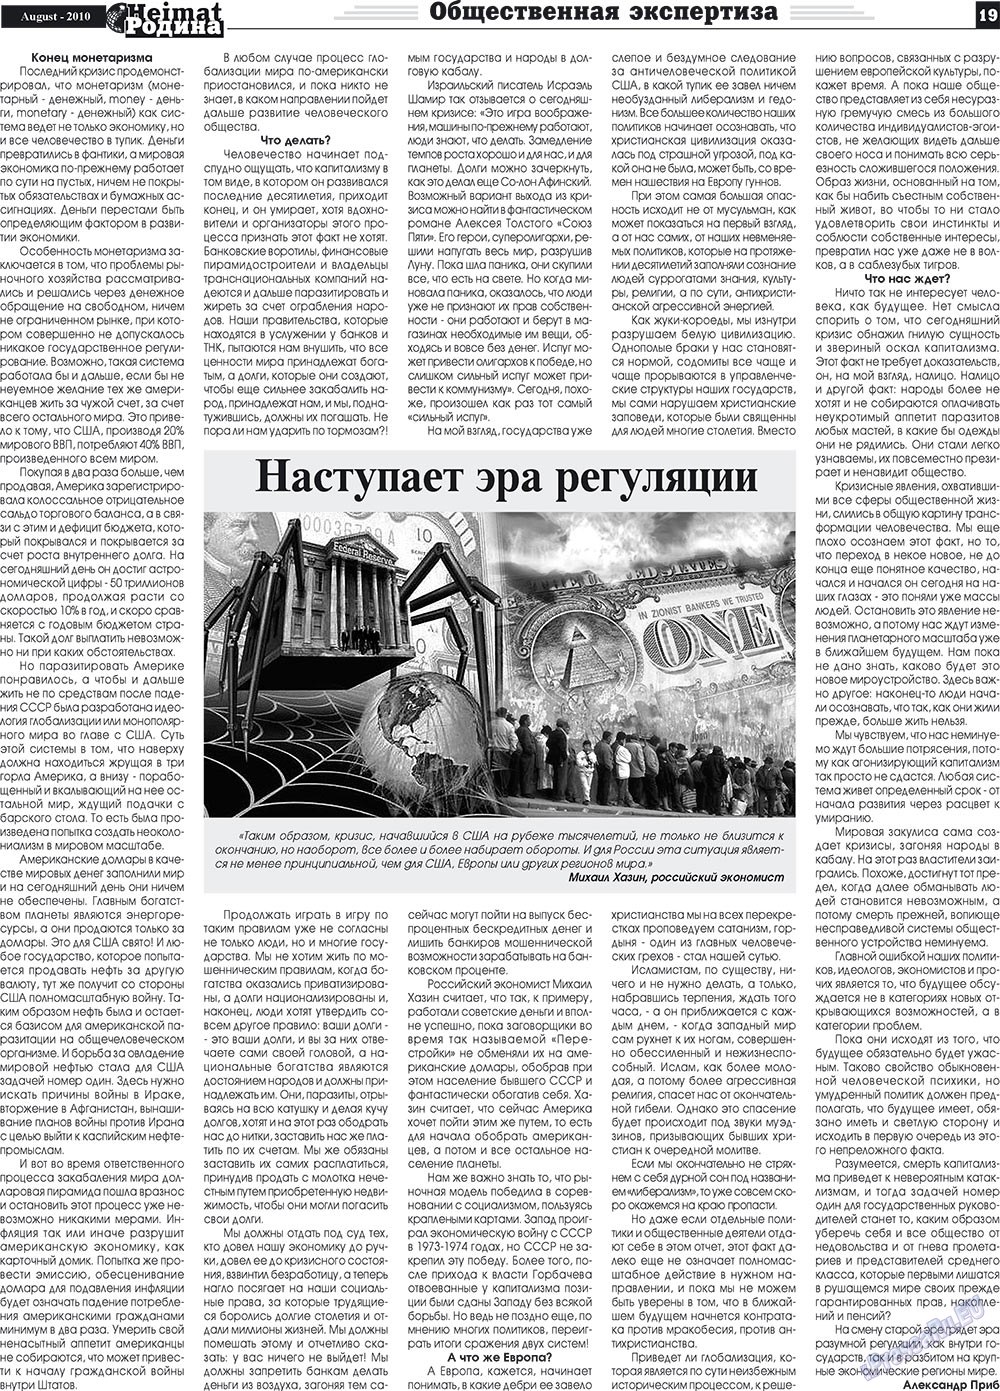 Heimat-Родина (газета). 2010 год, номер 8, стр. 19